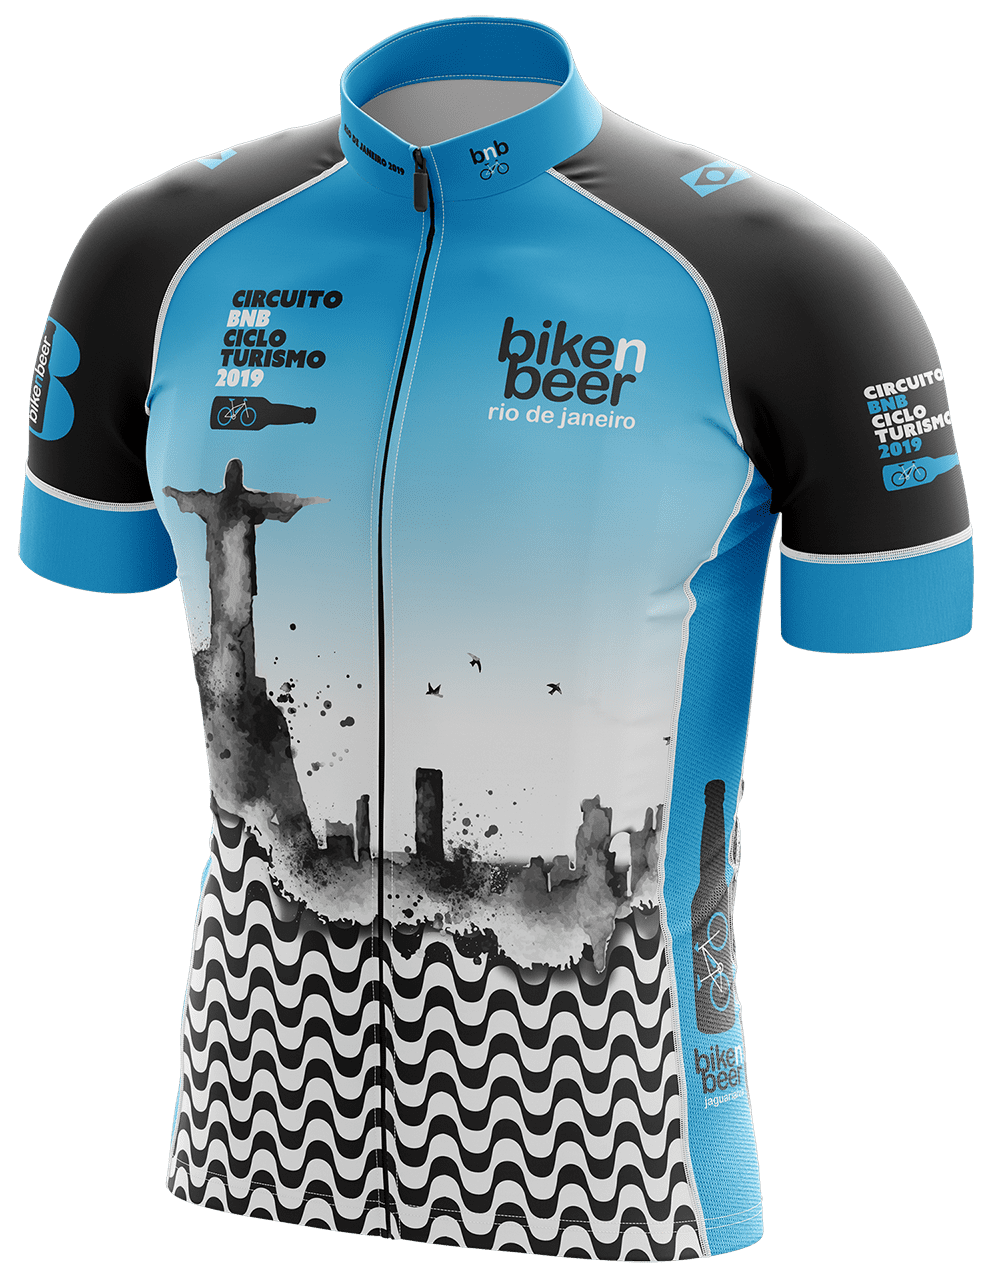 Jersey Oficial para viagem de cicloturismo Bike and Beer para o Rio de Janeiro - 2019.